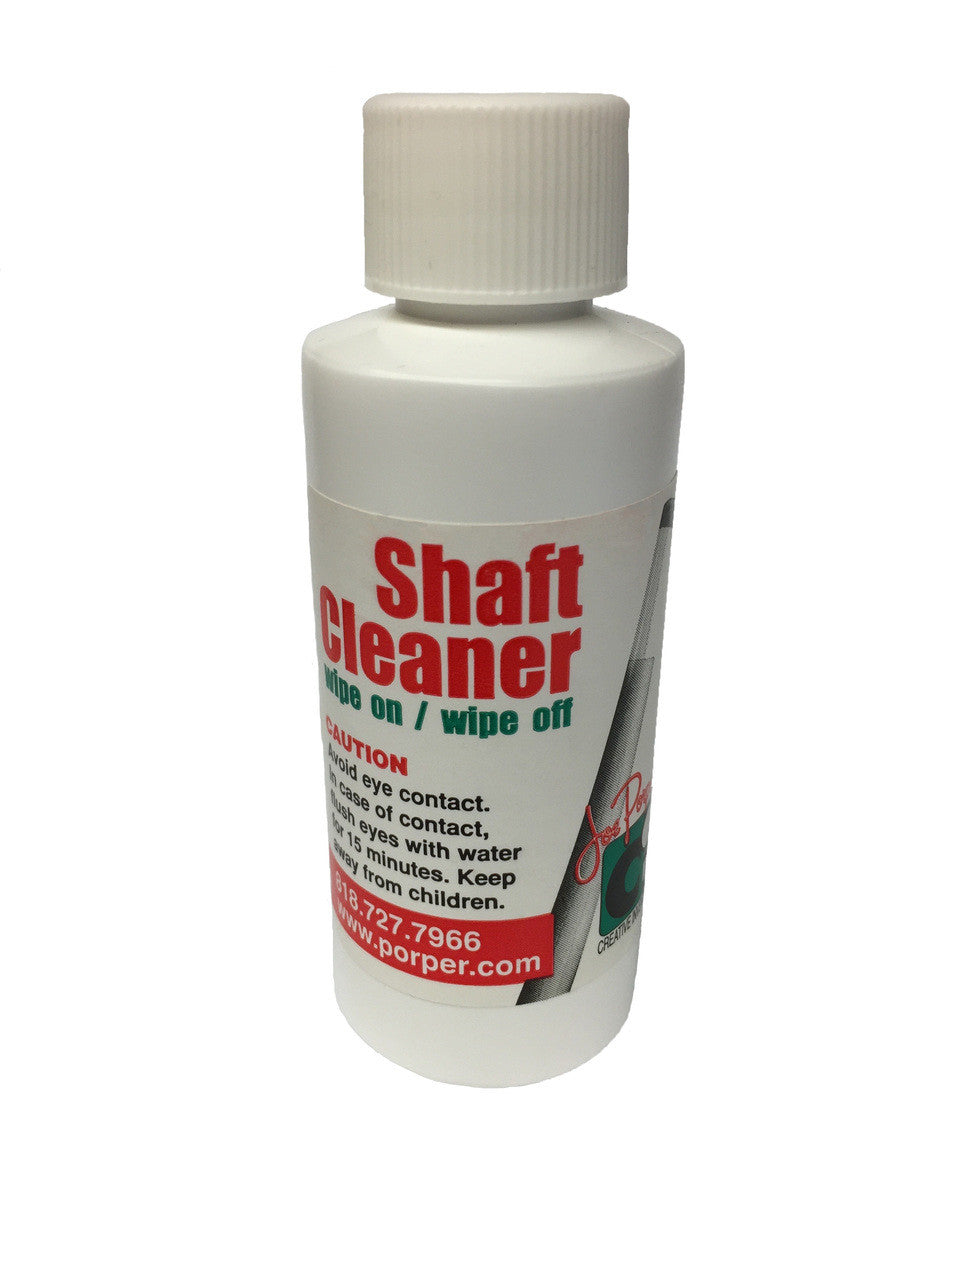 Porper Shaft Cleaner / Polisher